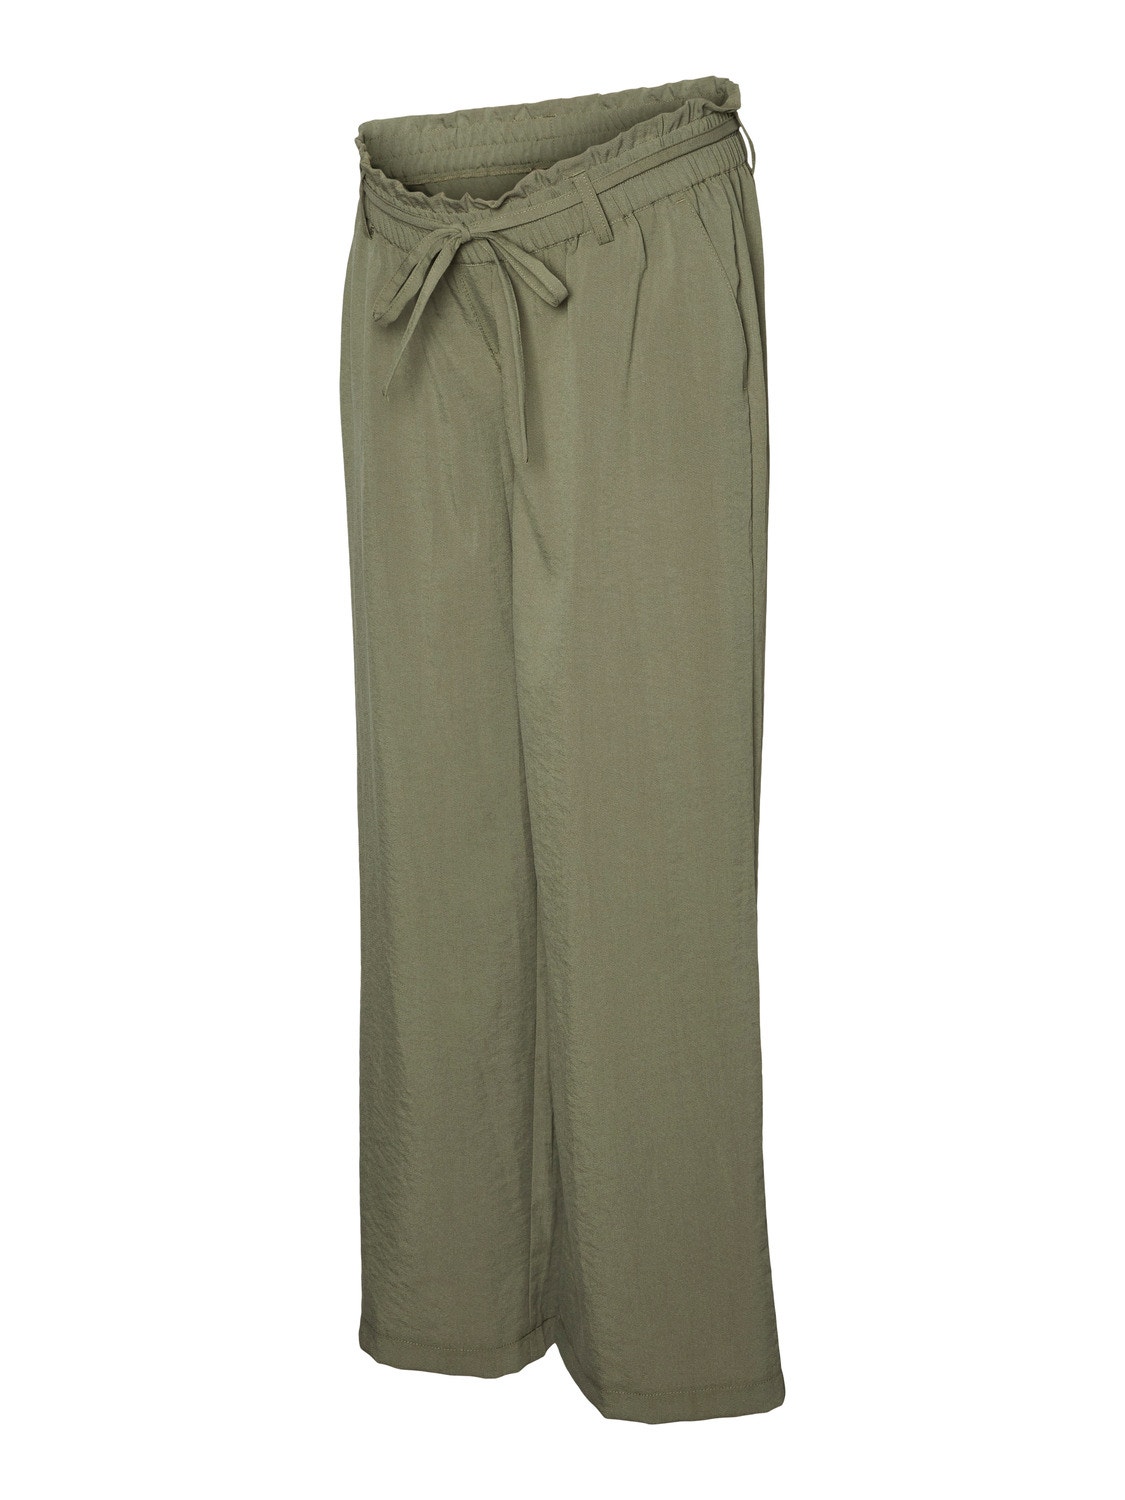 MAMA.LICIOUS Pantalones Corte regular Tiro medio -Four Leaf Clover - 20017931